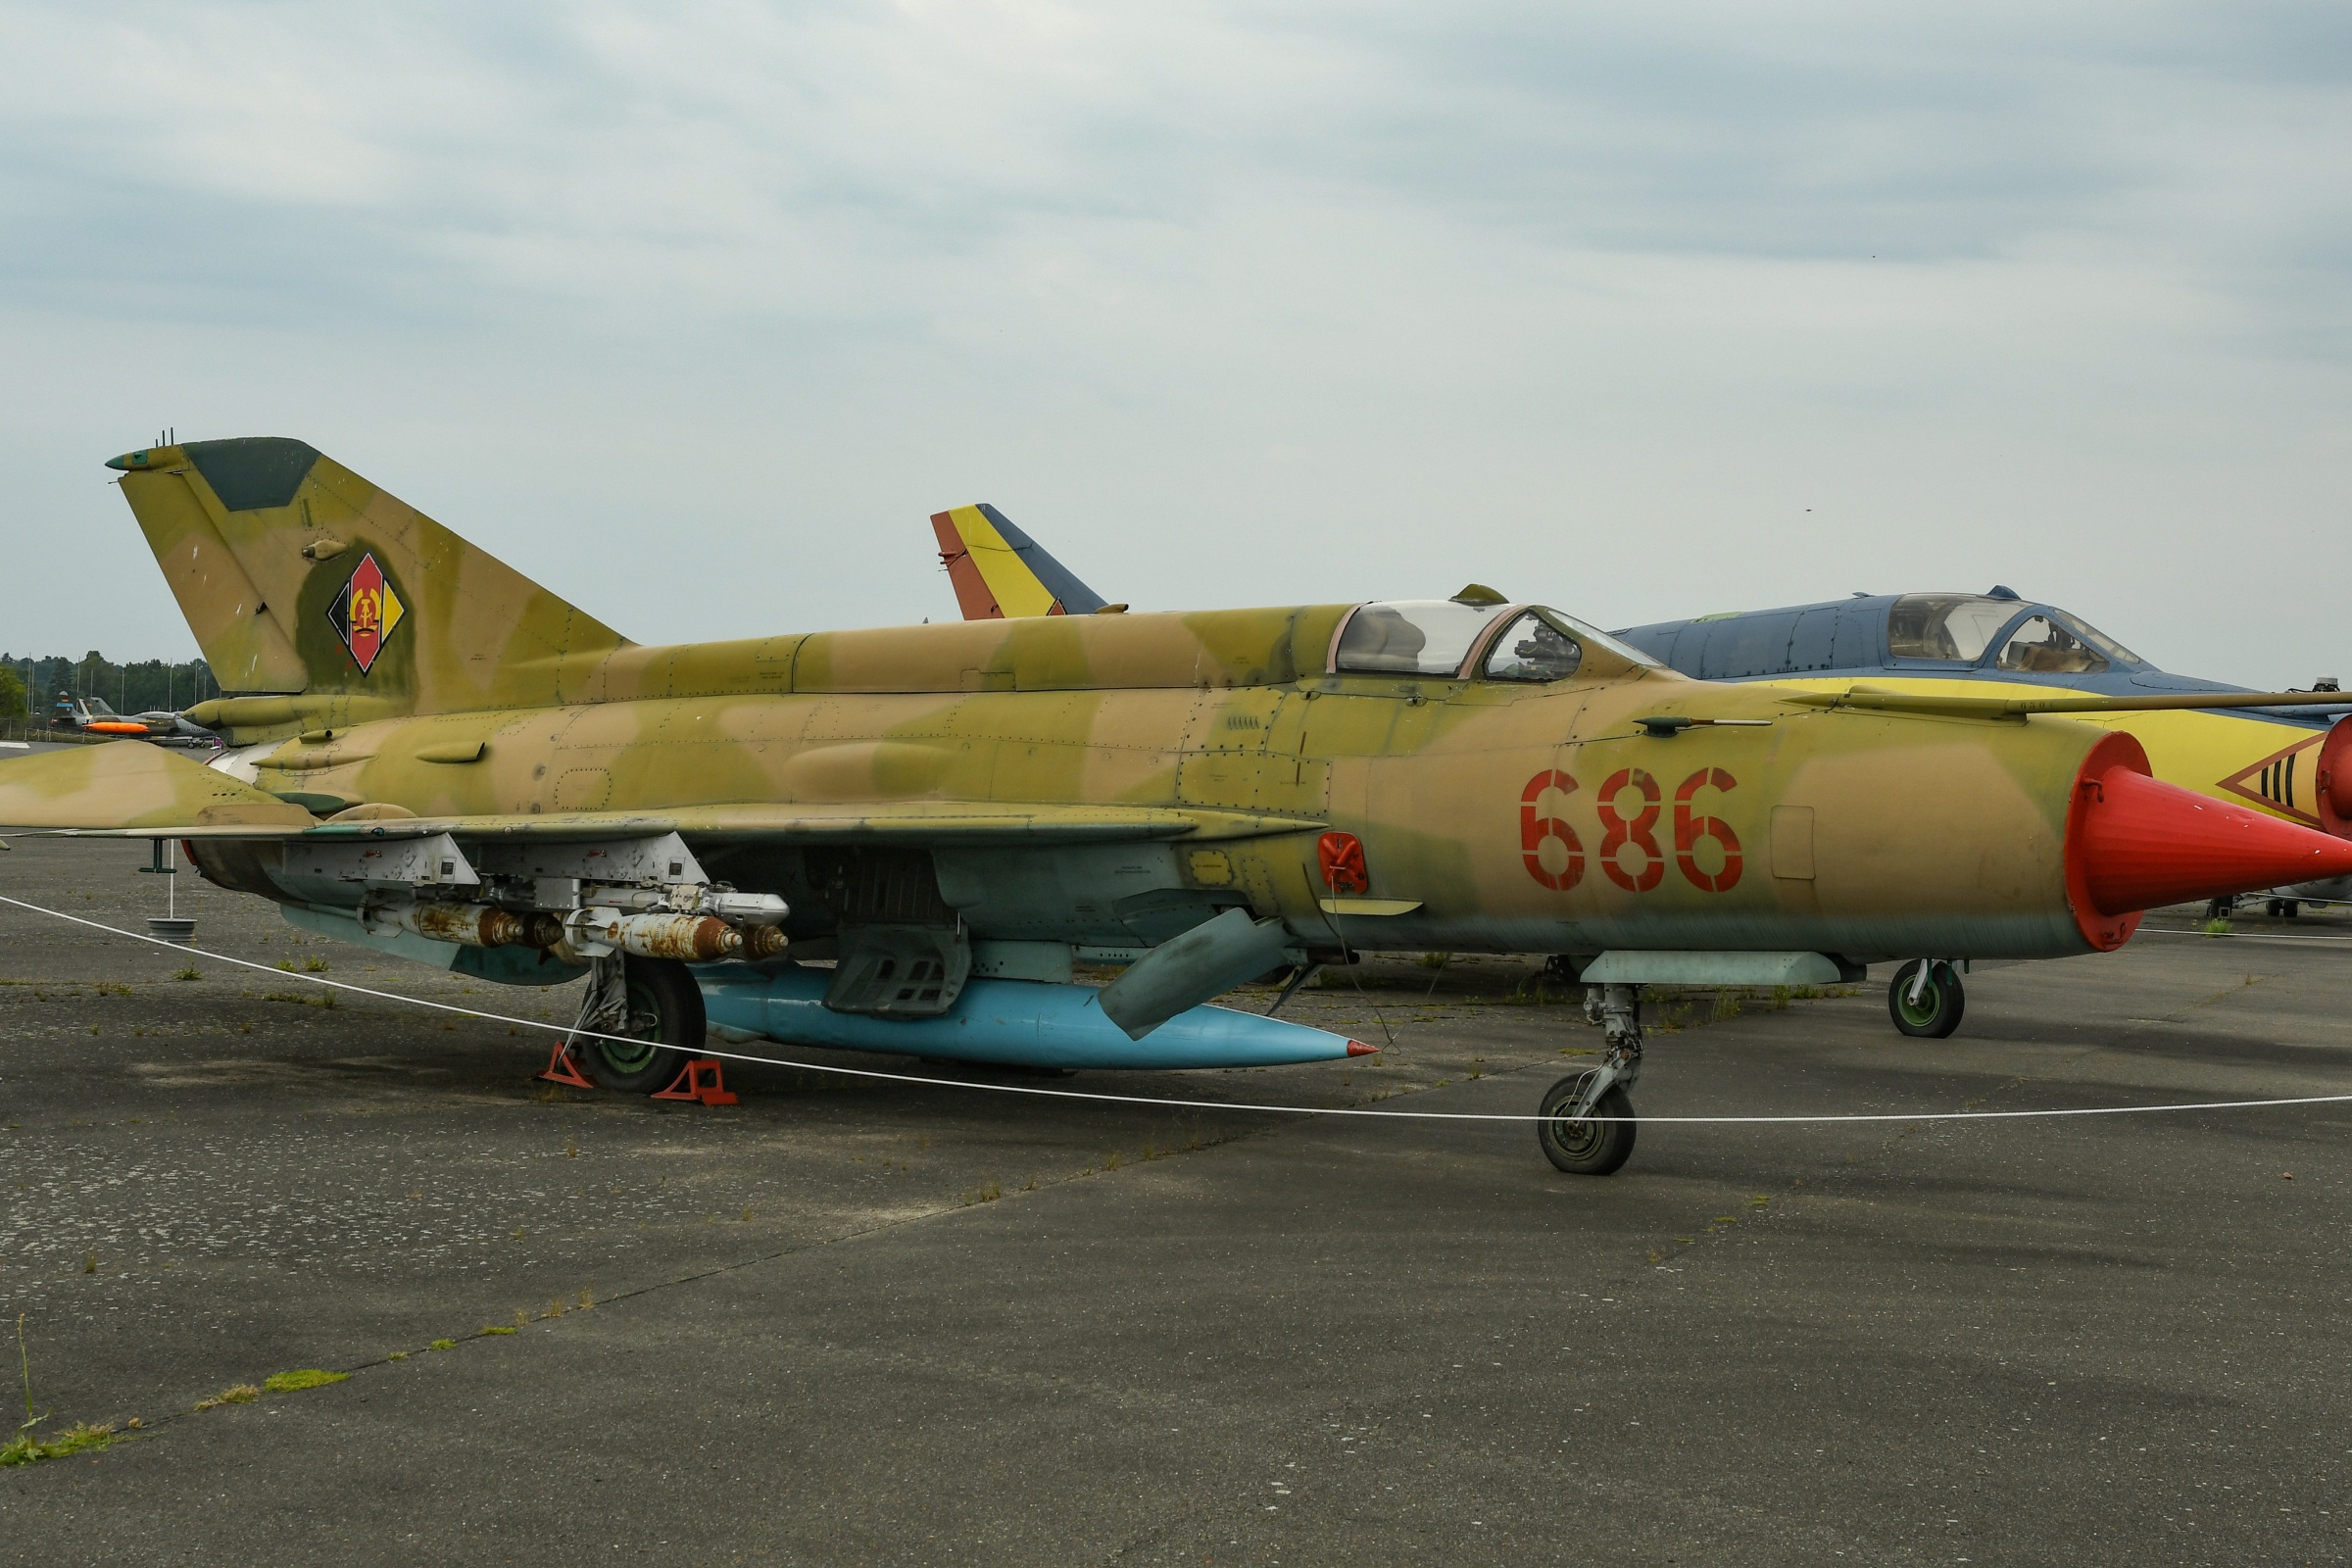 MiG-21M  (Fishbed-J)